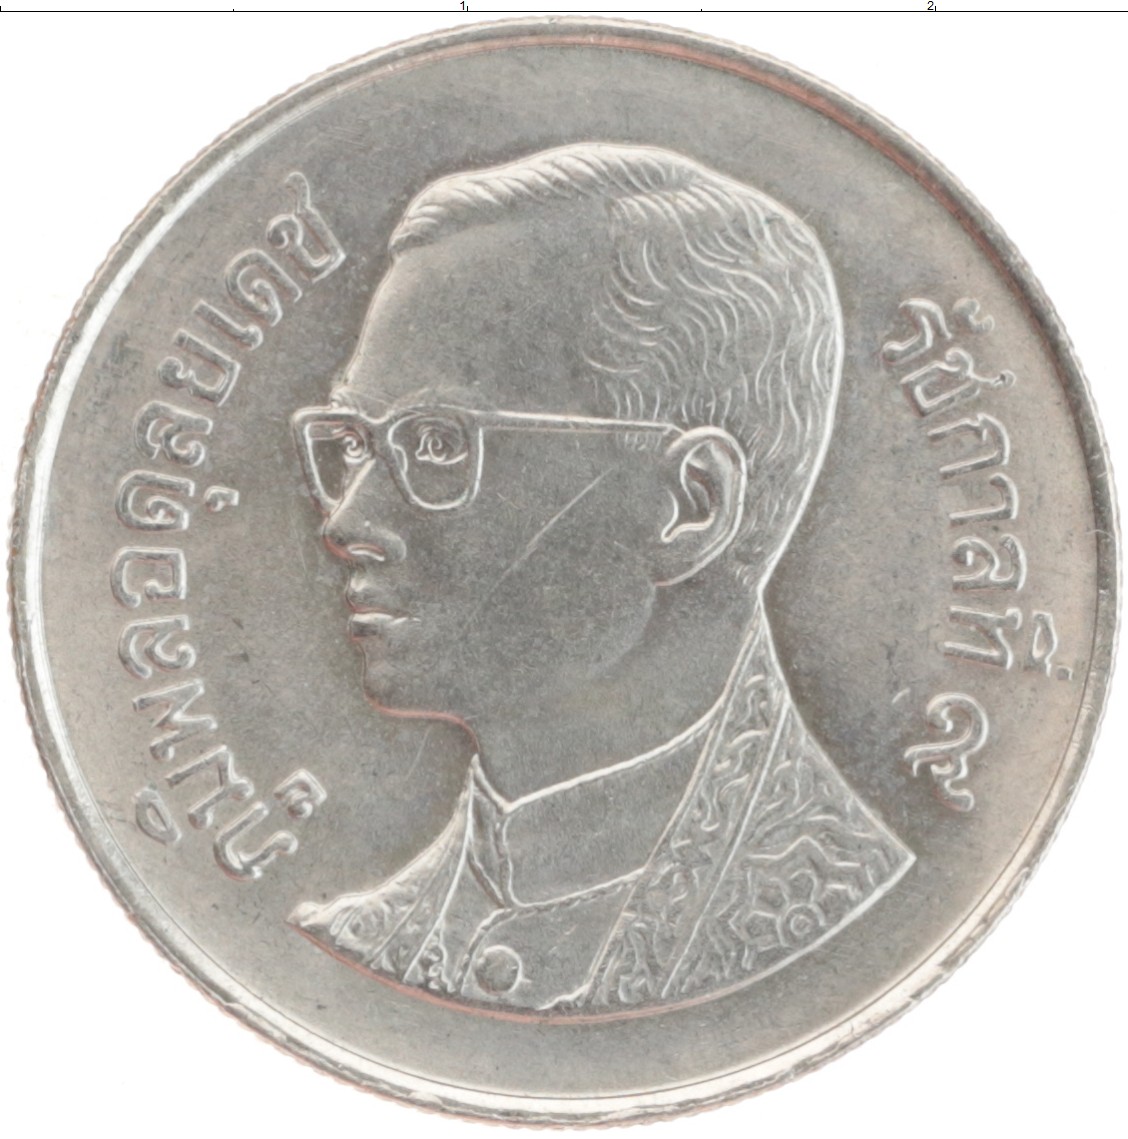 5 батов в рублях. Монеты 50 сатангов Таиланд. Монета 2 Тайланда 1897. 5 Бат в рублях. Баты номиналом 20 посвящены раме 9.